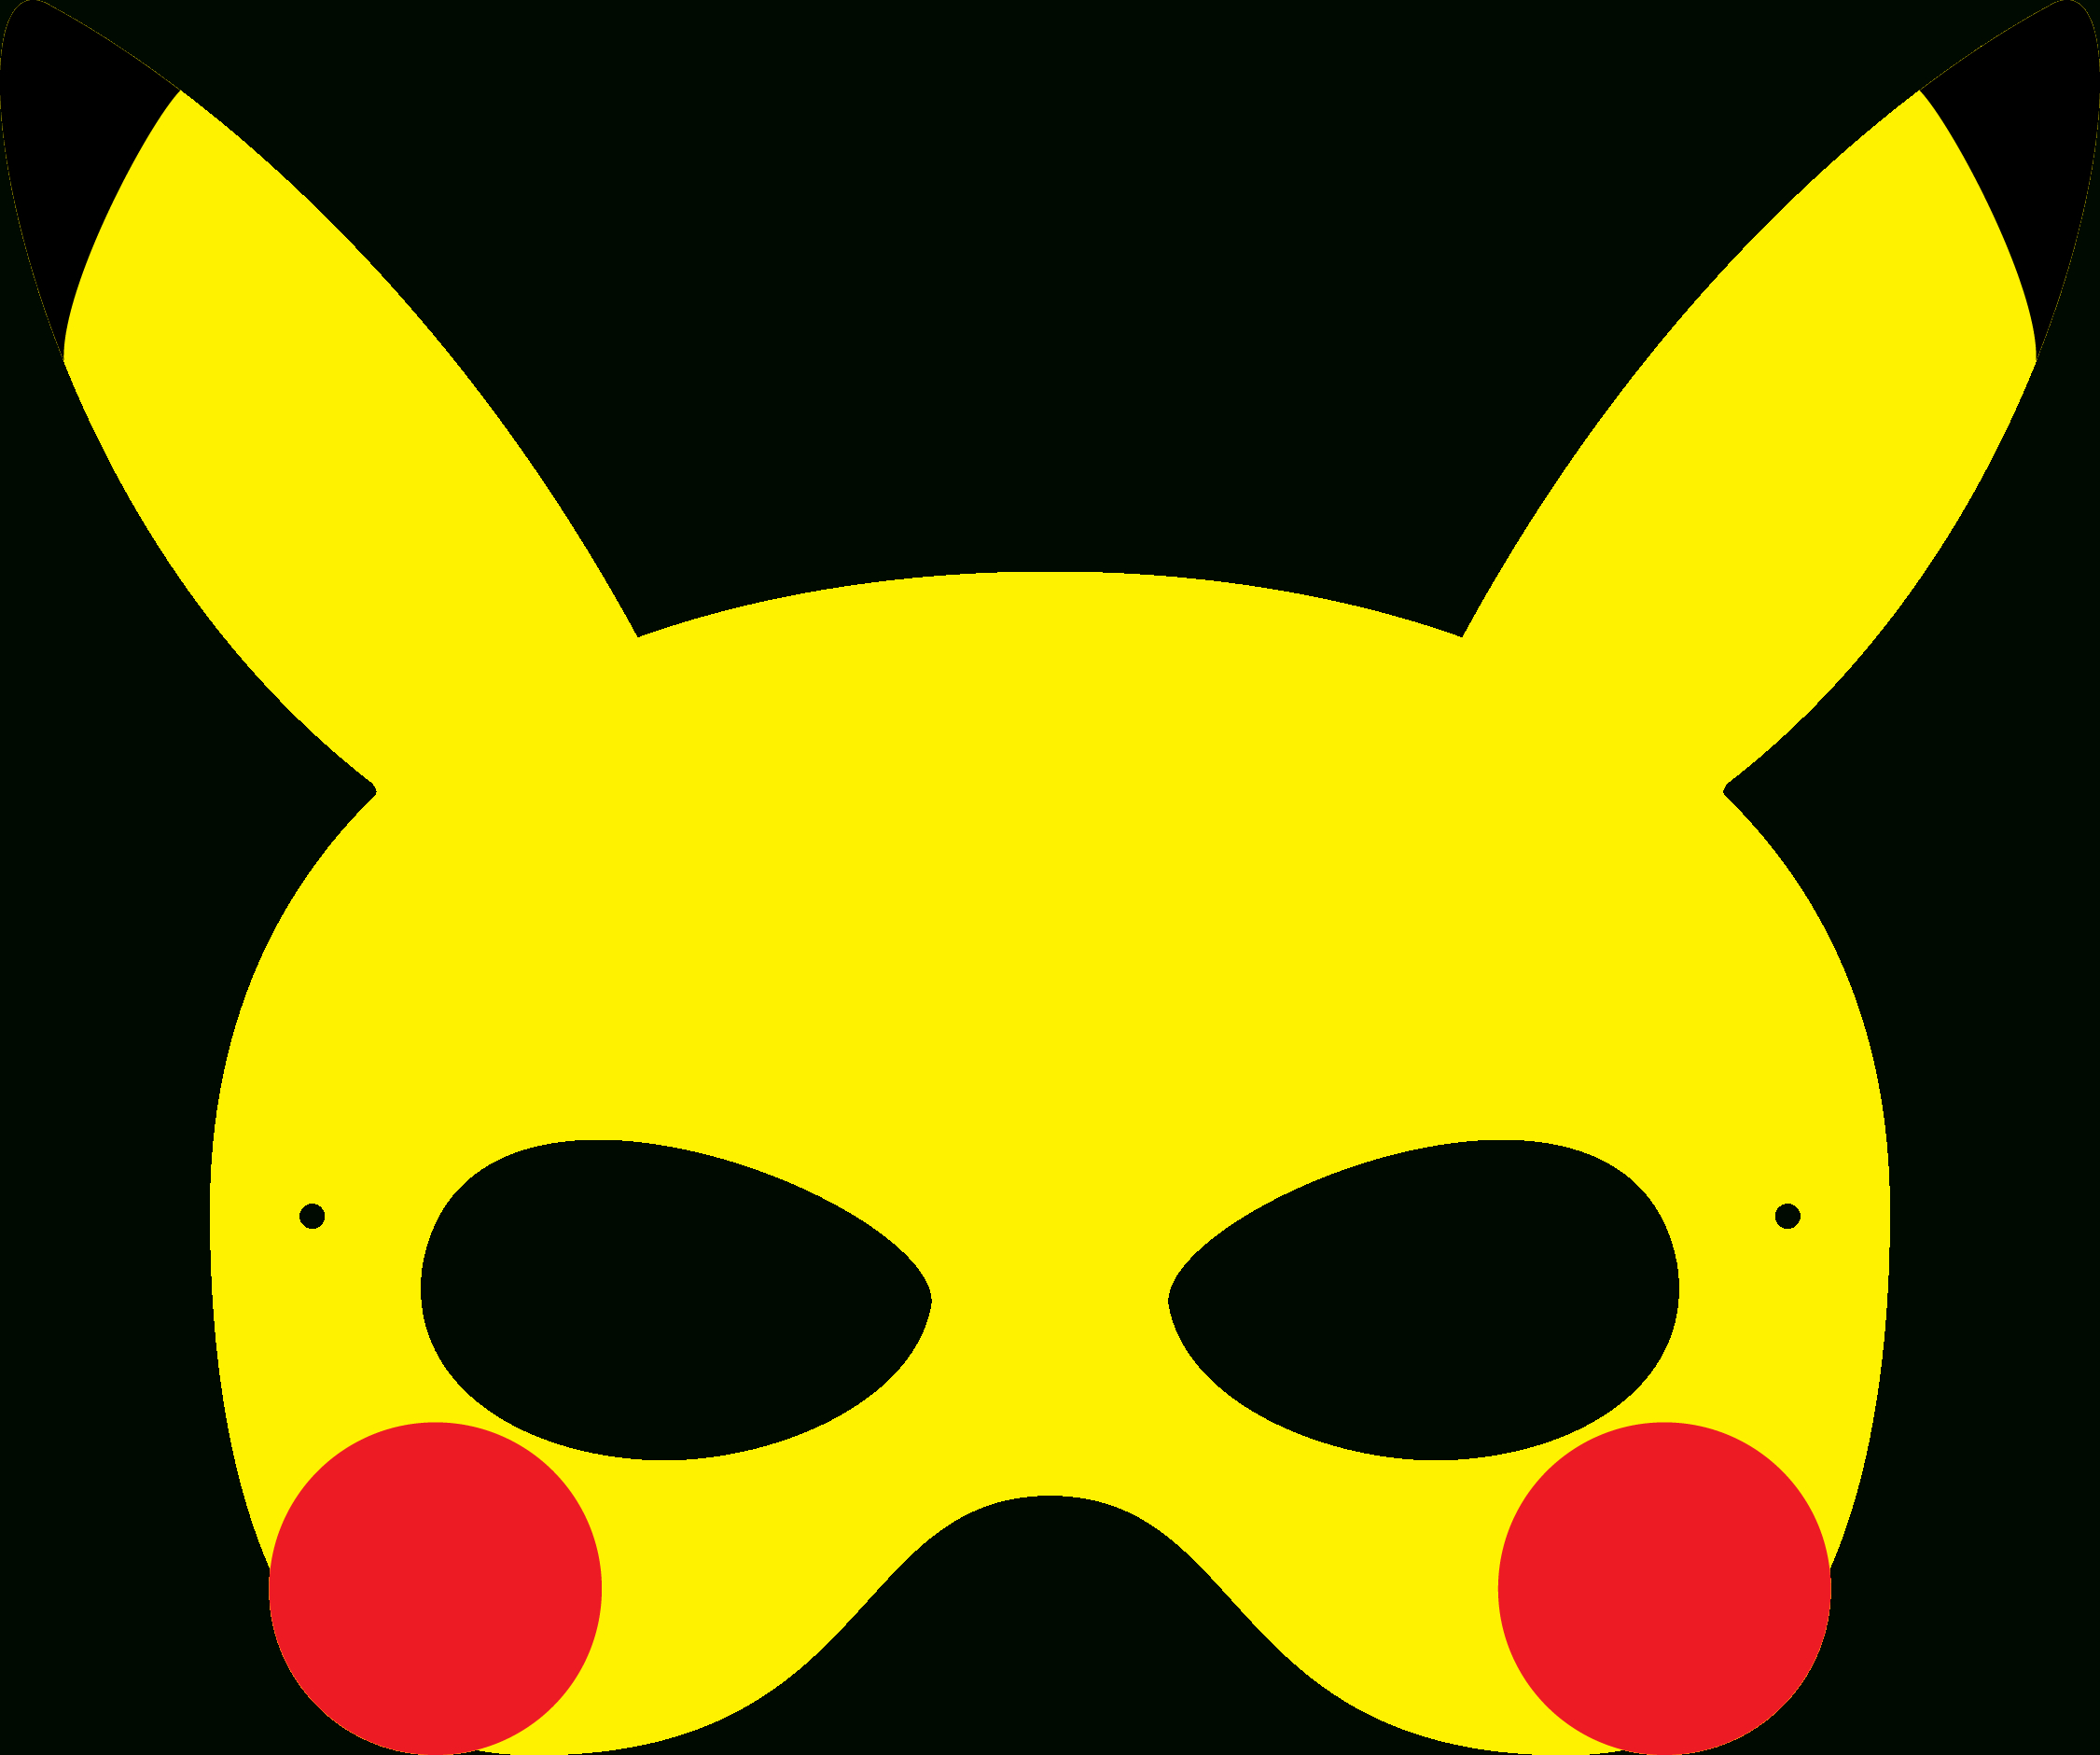 Pokemon Mask Printable - Design Templates - Free Printable Pokemon Masks